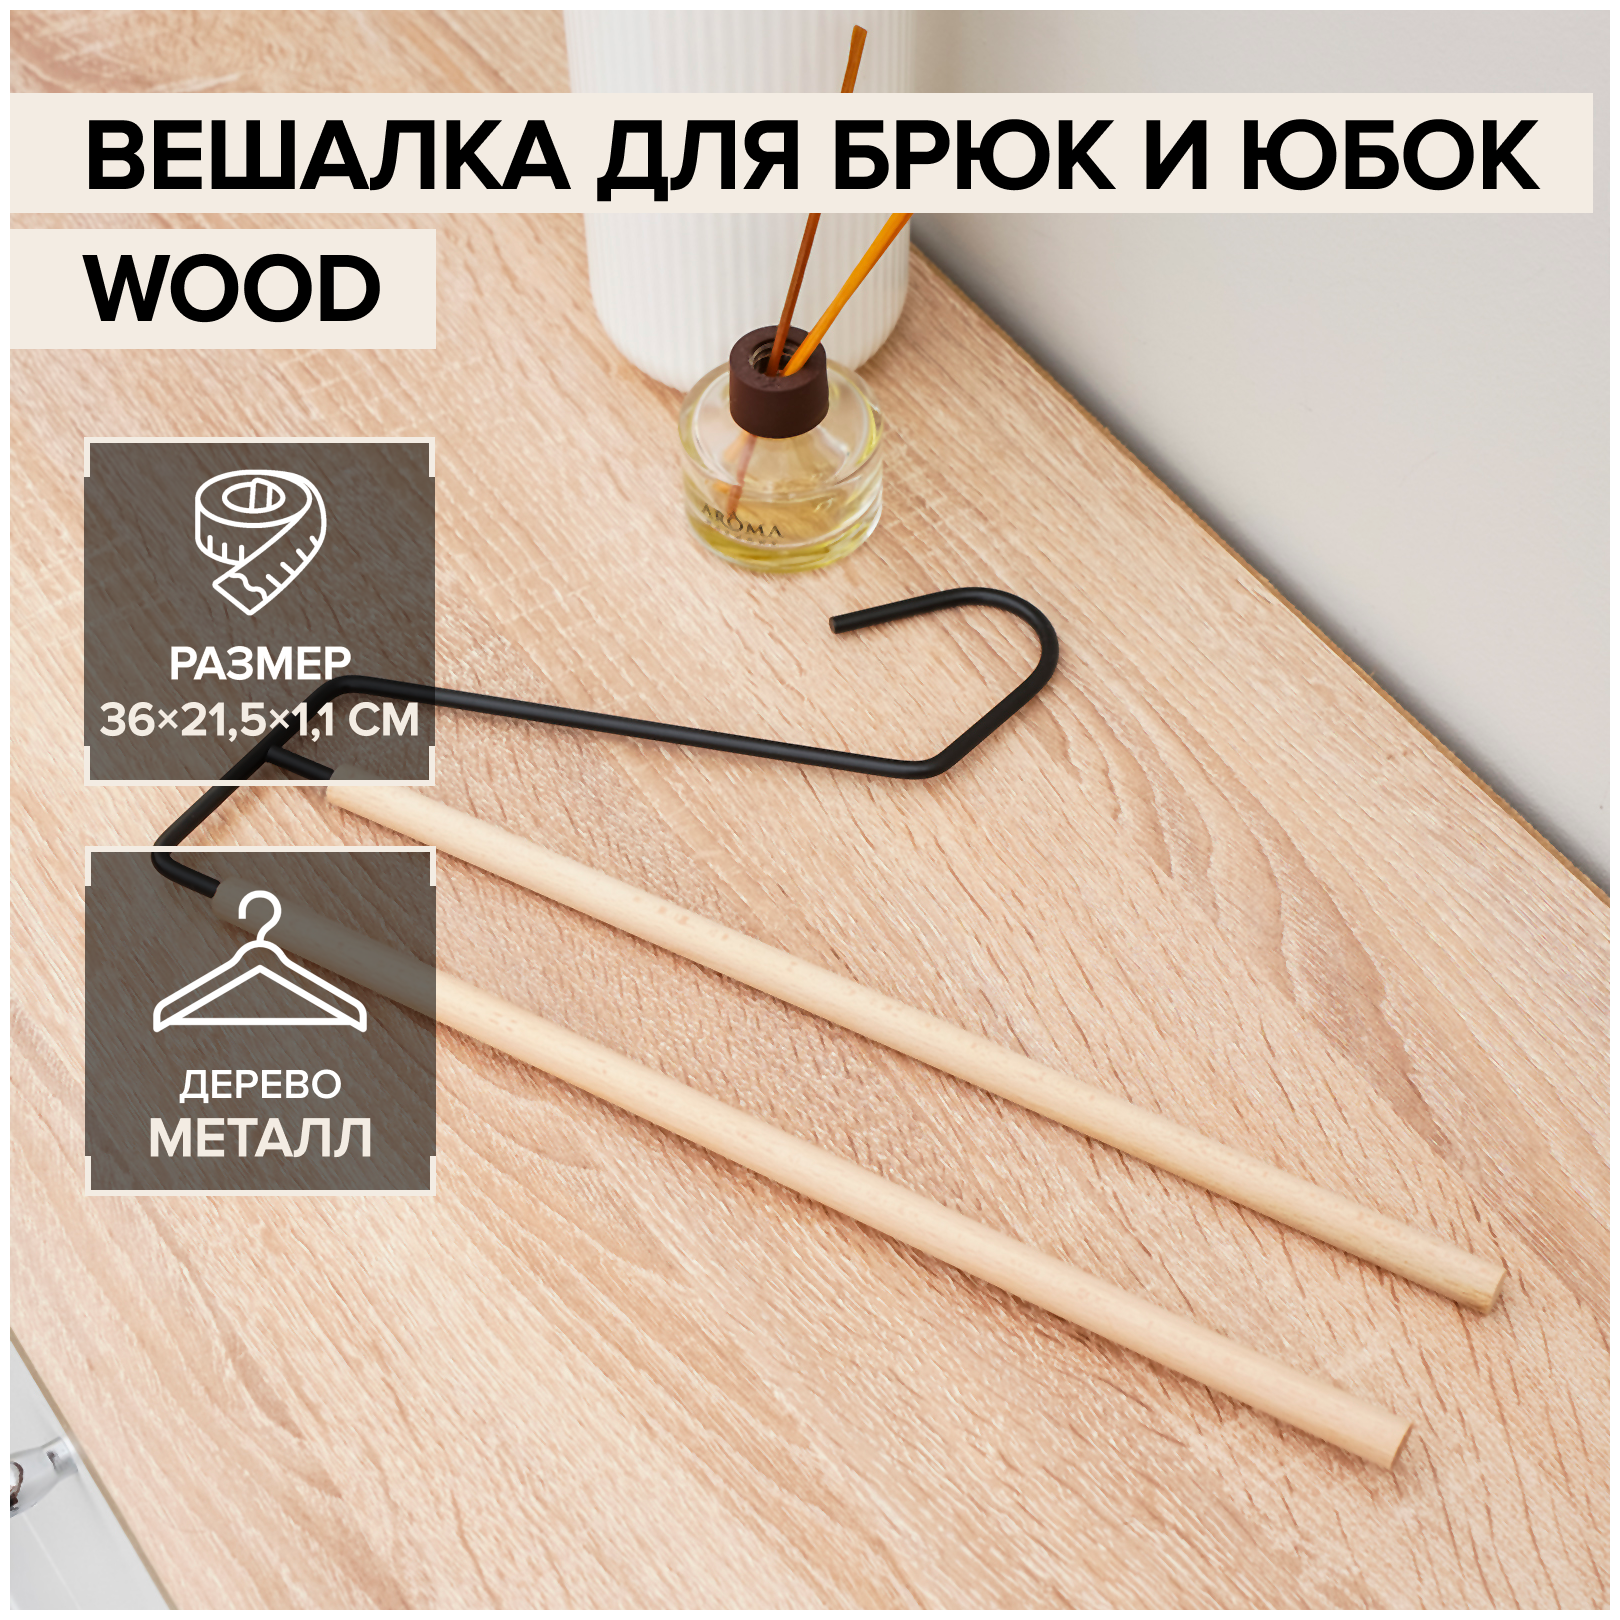 Плечики для брюк и юбок SAVANNA Wood, 2 перекладины, 36×21,5×1,1 см, цвет чёрный